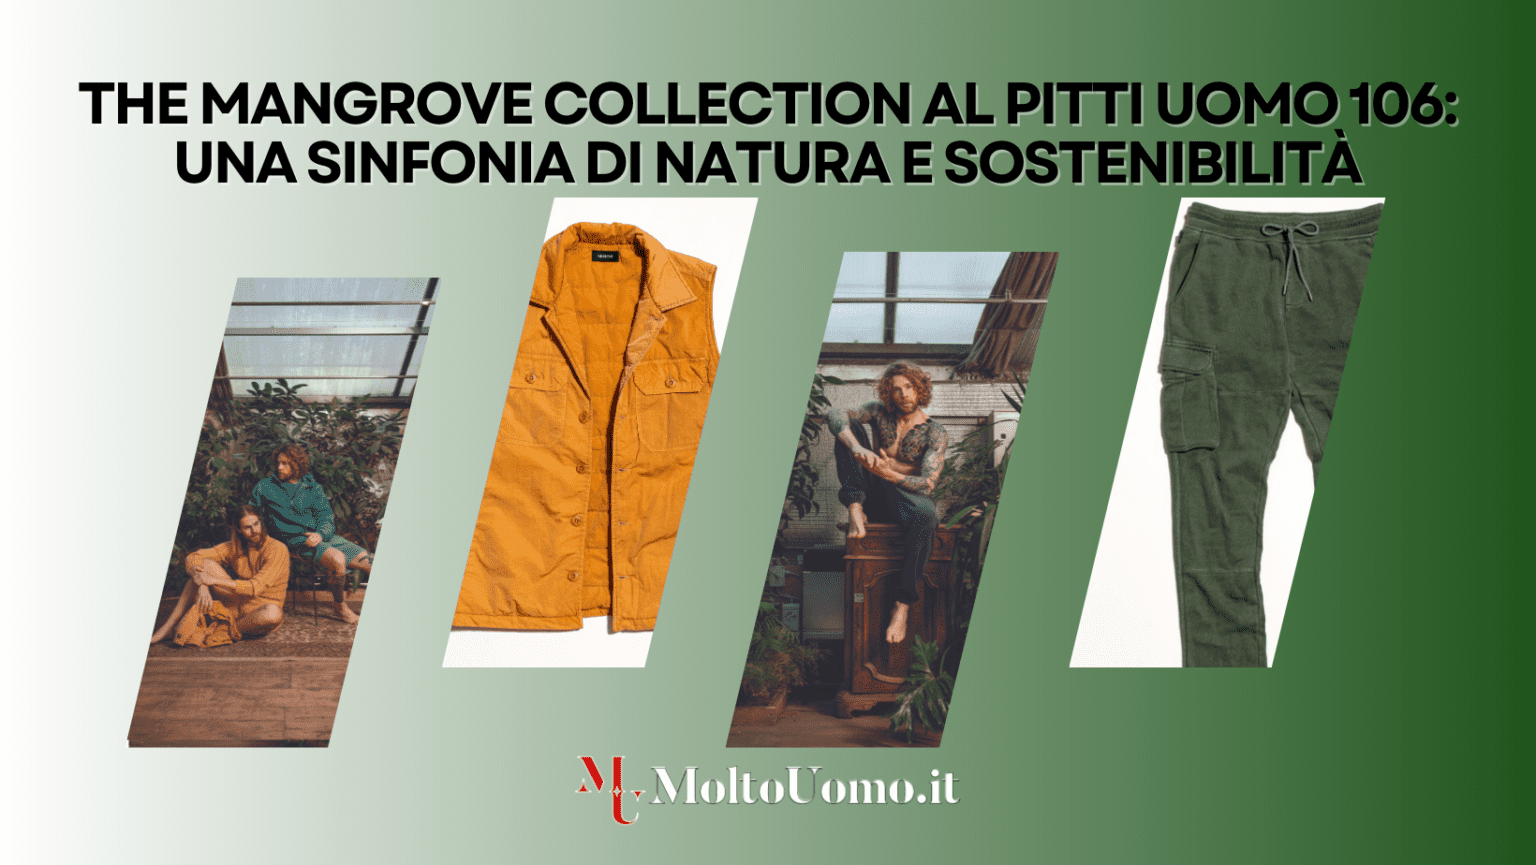 Pitti Uomo 106, il prestigioso evento di moda maschile a Firenze, è certamente il palcoscenico perfetto per il lancio della collezione Primavera-Estate 2025 di KEELING, The Mangrove Collection